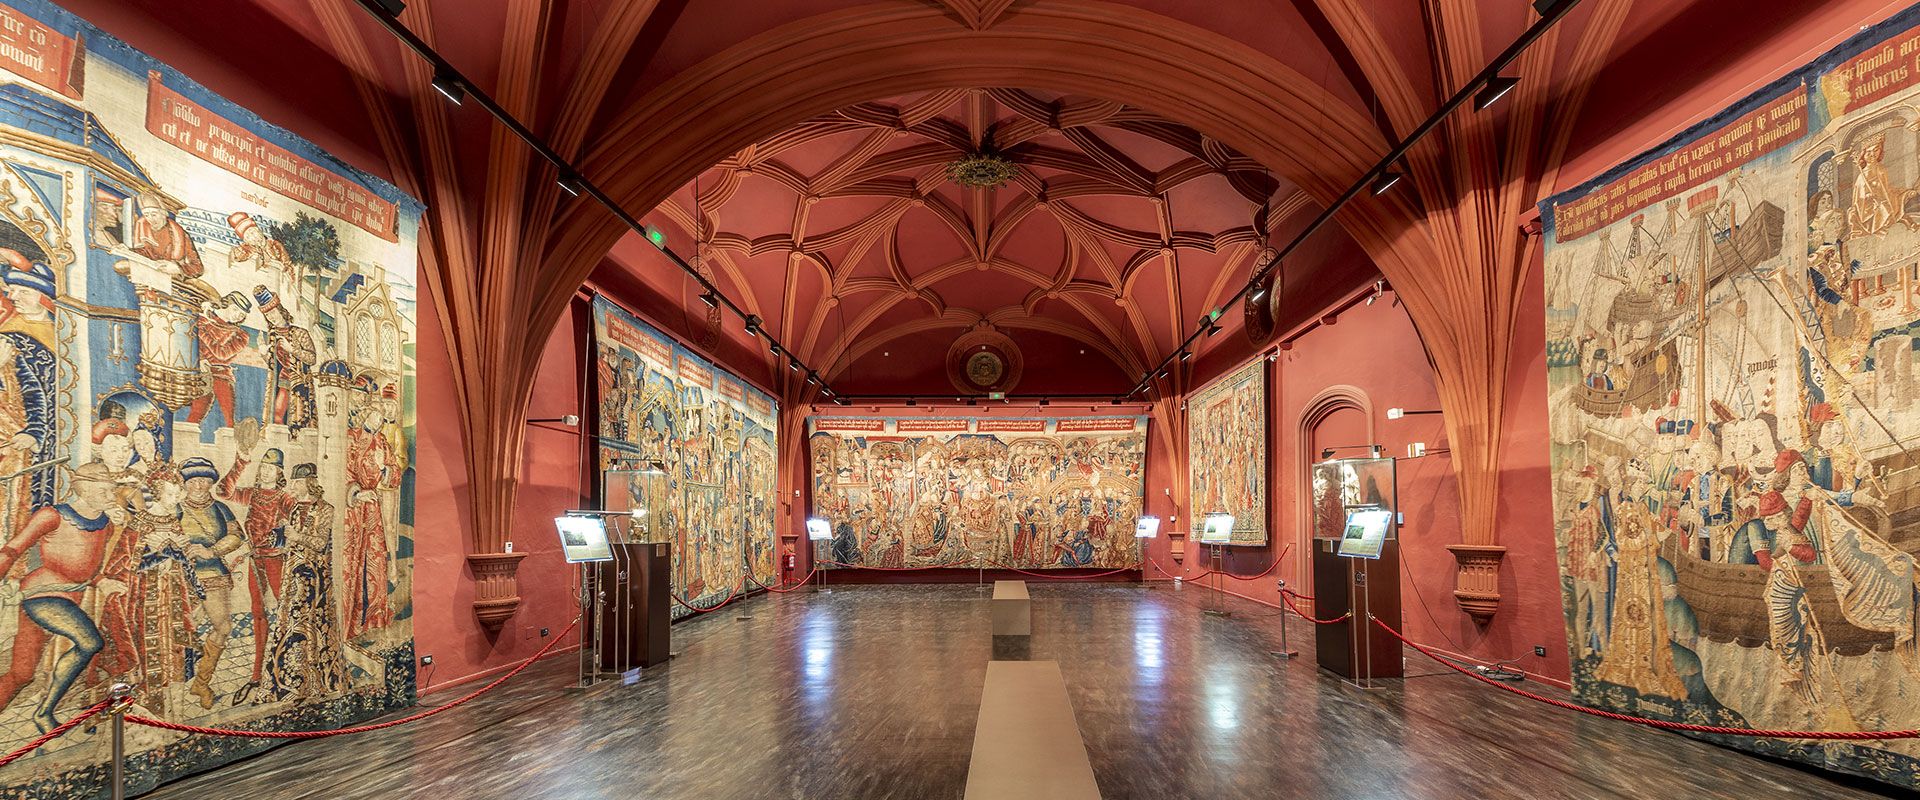 Museo de Tapices - Catedrales de Zaragoza